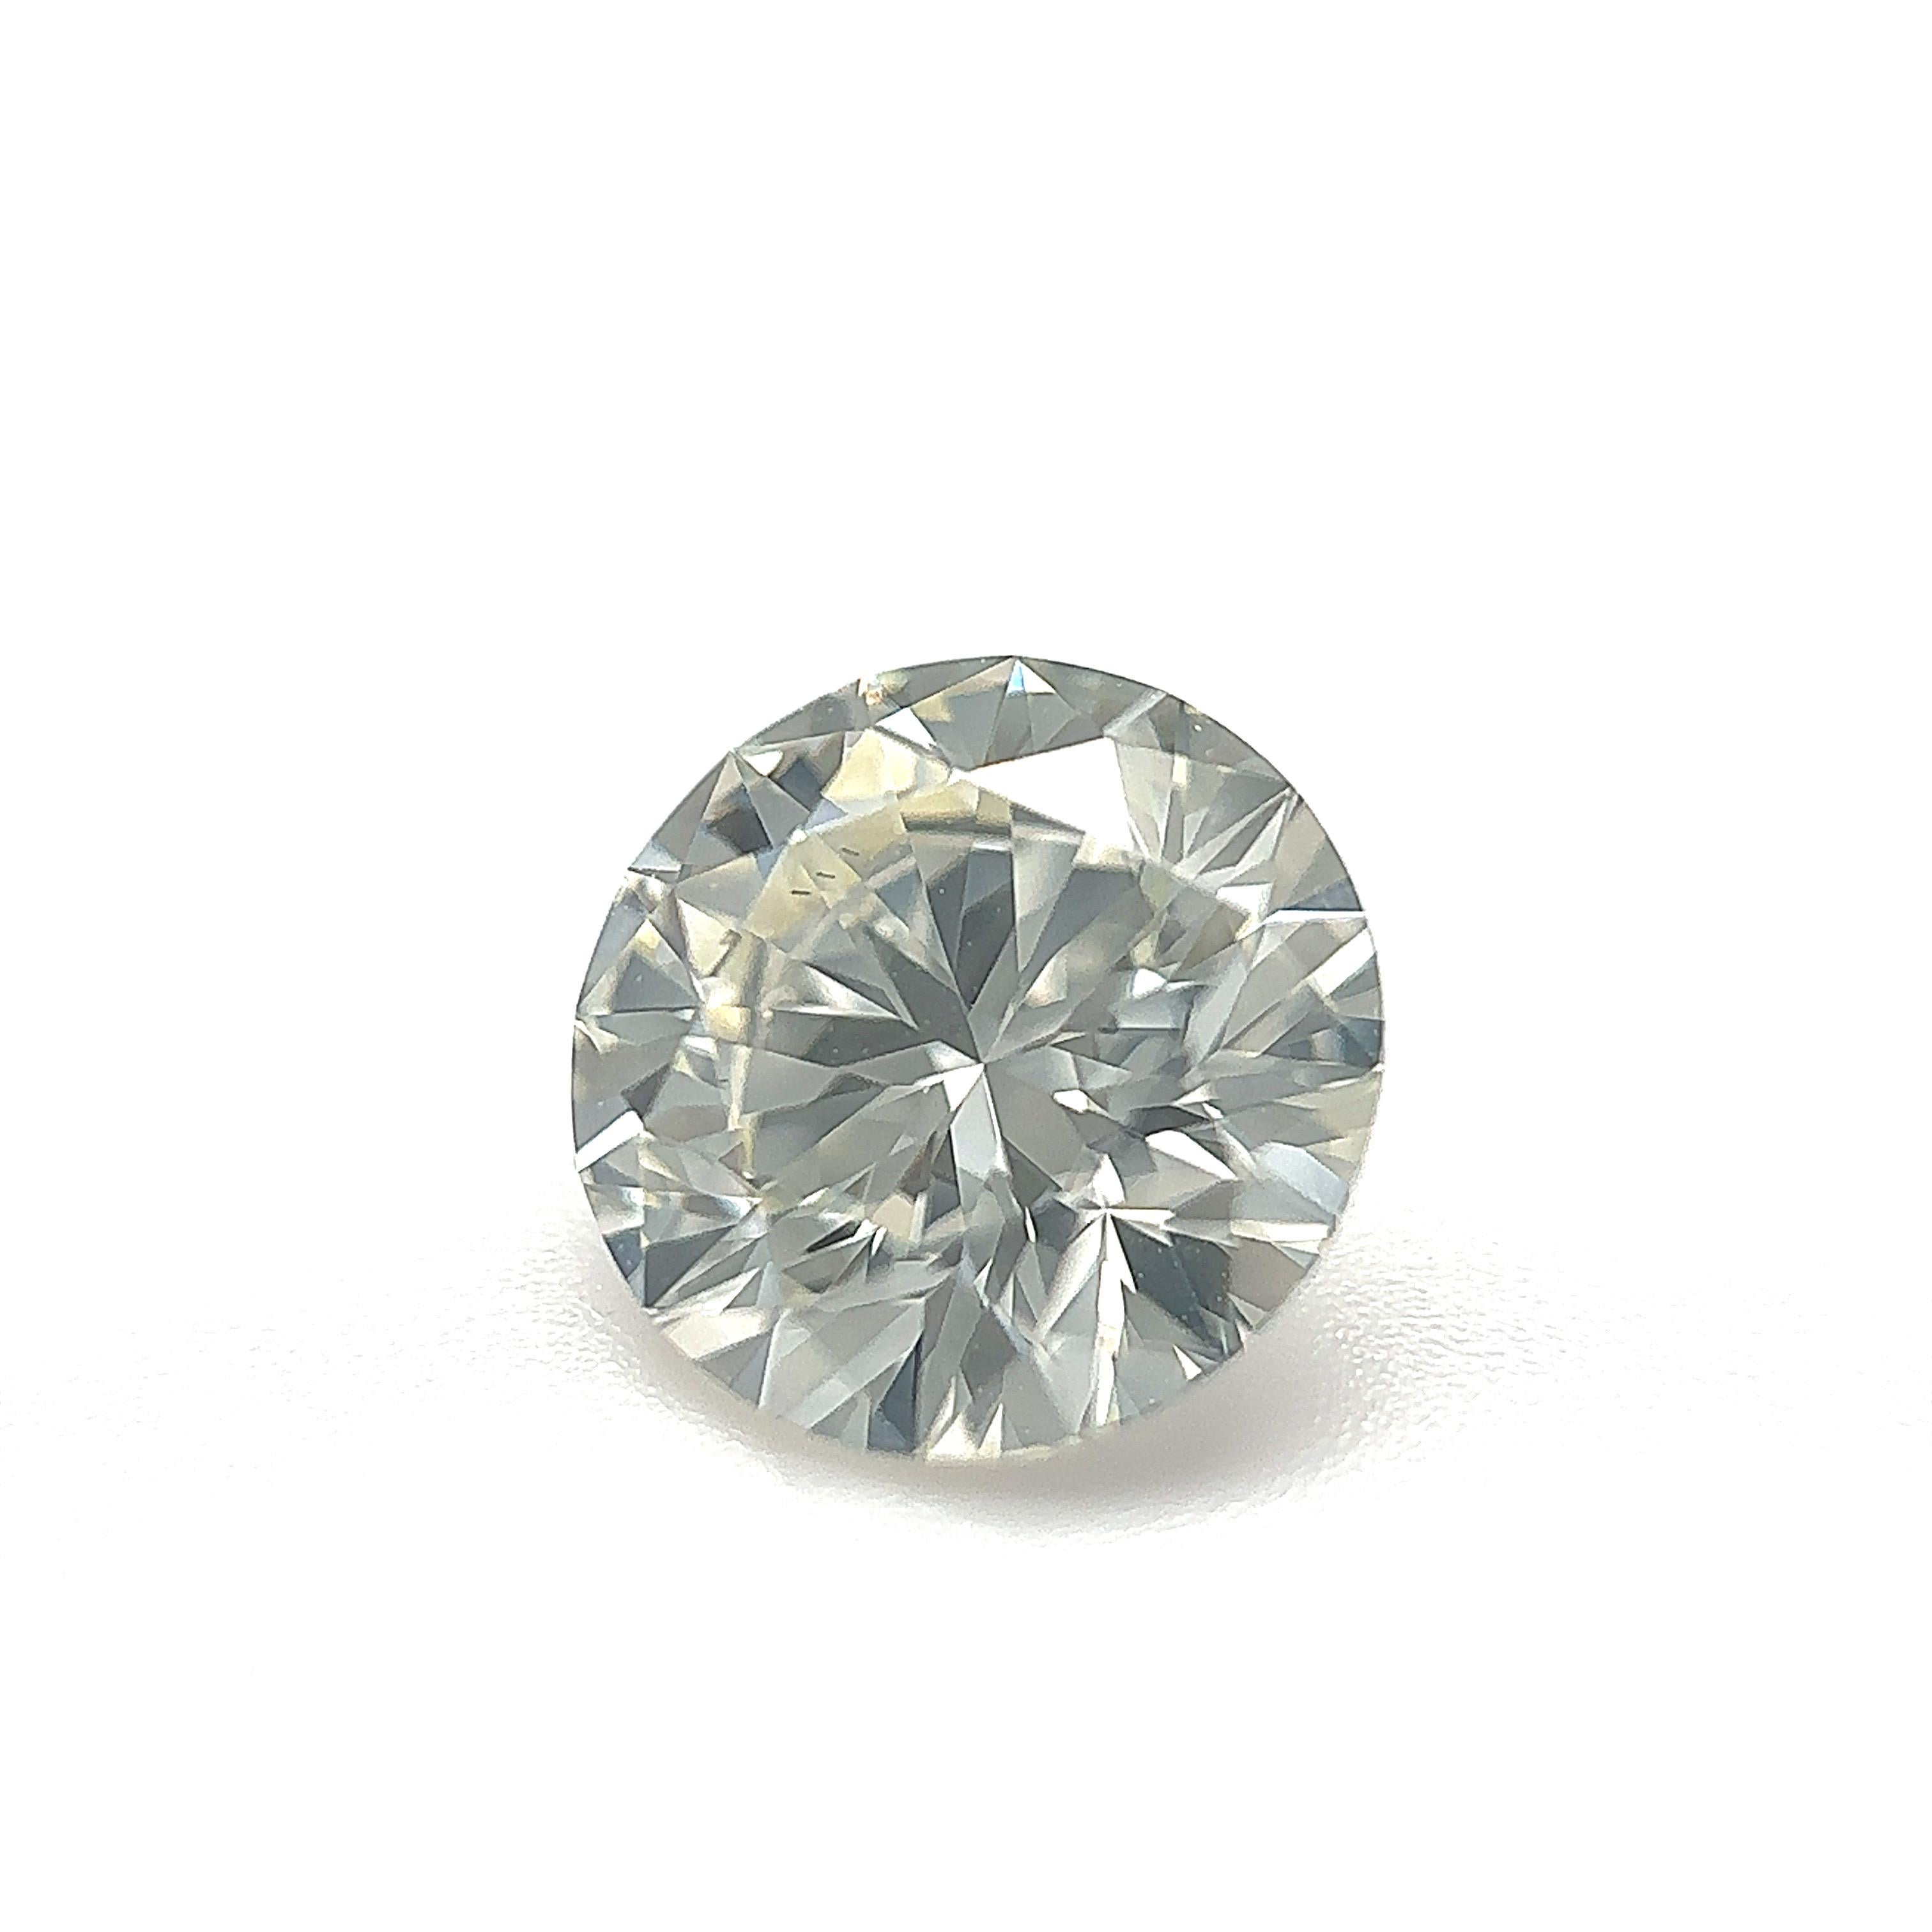 GIA-zertifizierter 1.51 Karat runder Brillant-Naturdiamant Lose Stein (Anpassungsoption)

Farbe: K
Klarheit: VS1 

Ideal für Verlobungsringe, Eheringe, Diamant-Halsketten und Diamant-Ohrringe. Setzen Sie sich mit uns in Verbindung, um Ihren Schmuck